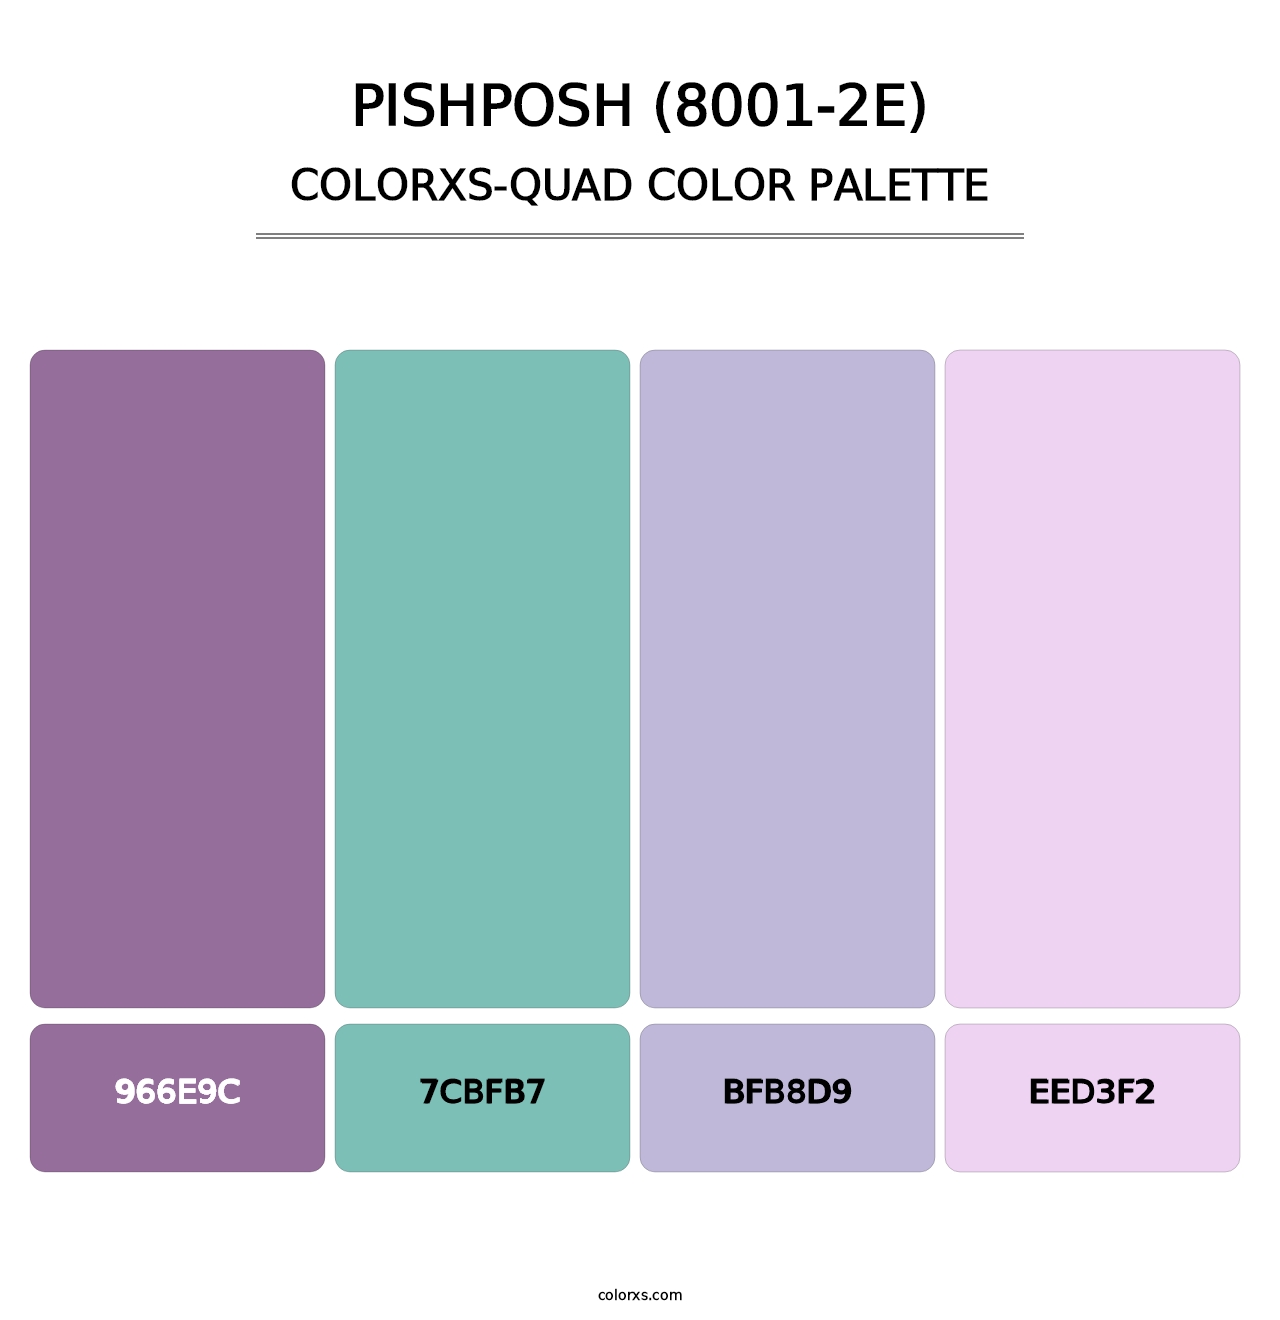 Pishposh (8001-2E) - Colorxs Quad Palette